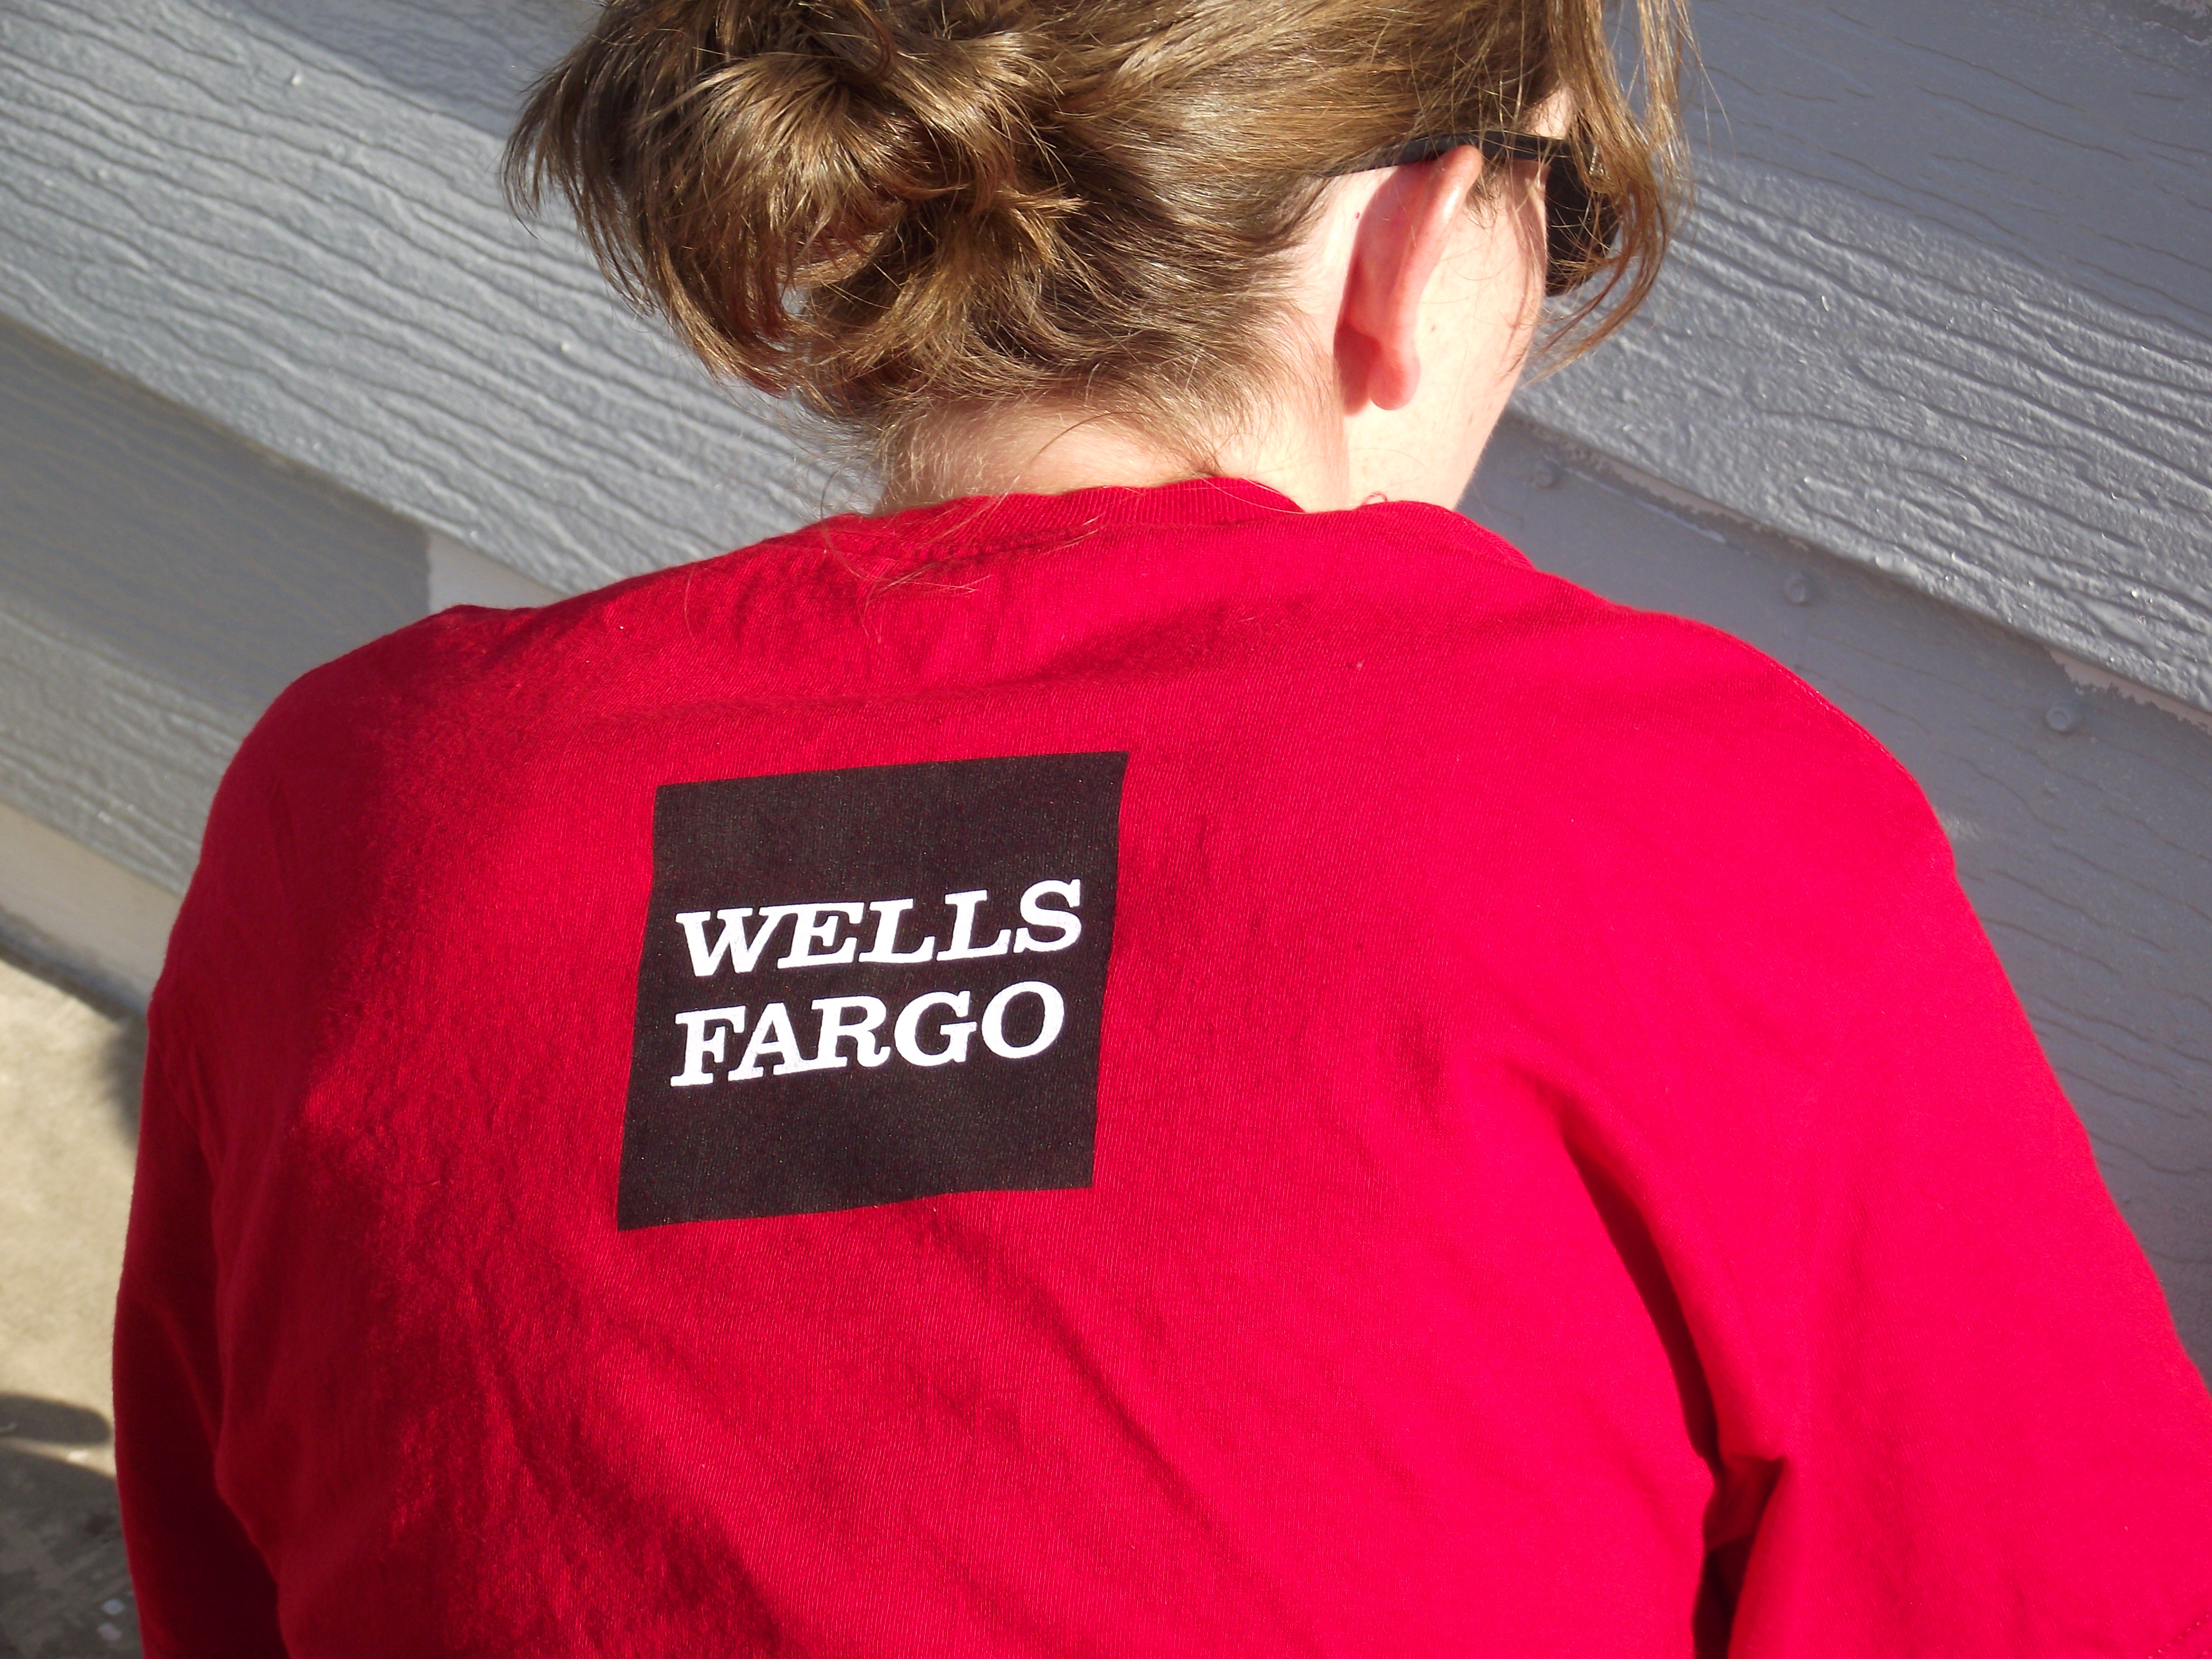 8/22/12: Wells Fargo Volunteer